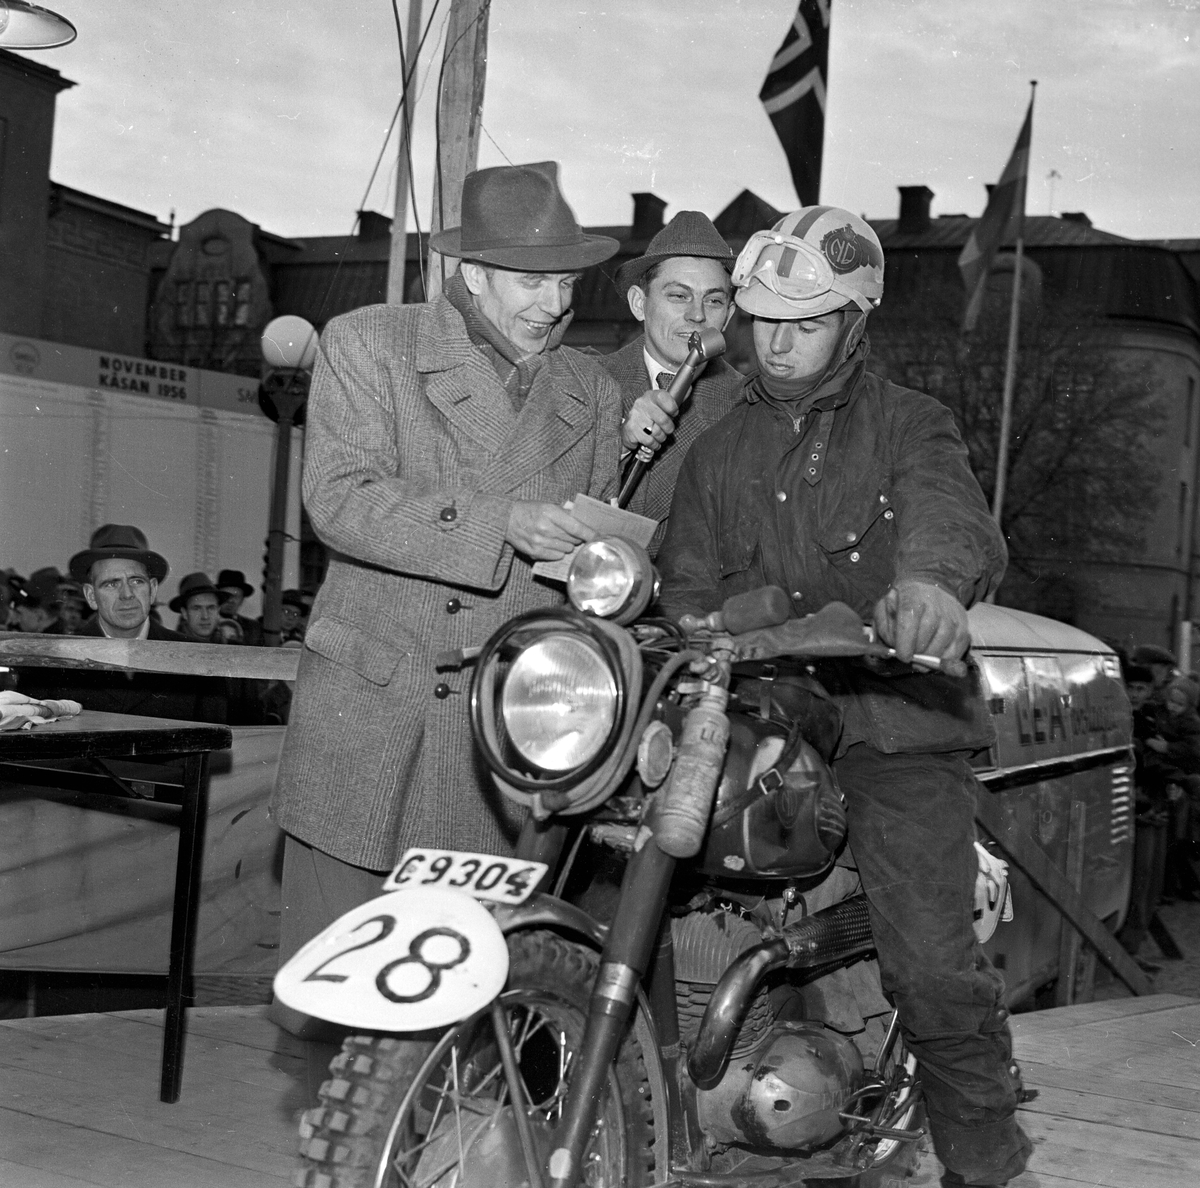 "Stort manfall i krävande tävling" - motorcykeltävlingen Novemberkåsan, Vaksala torg, Uppsala 1956